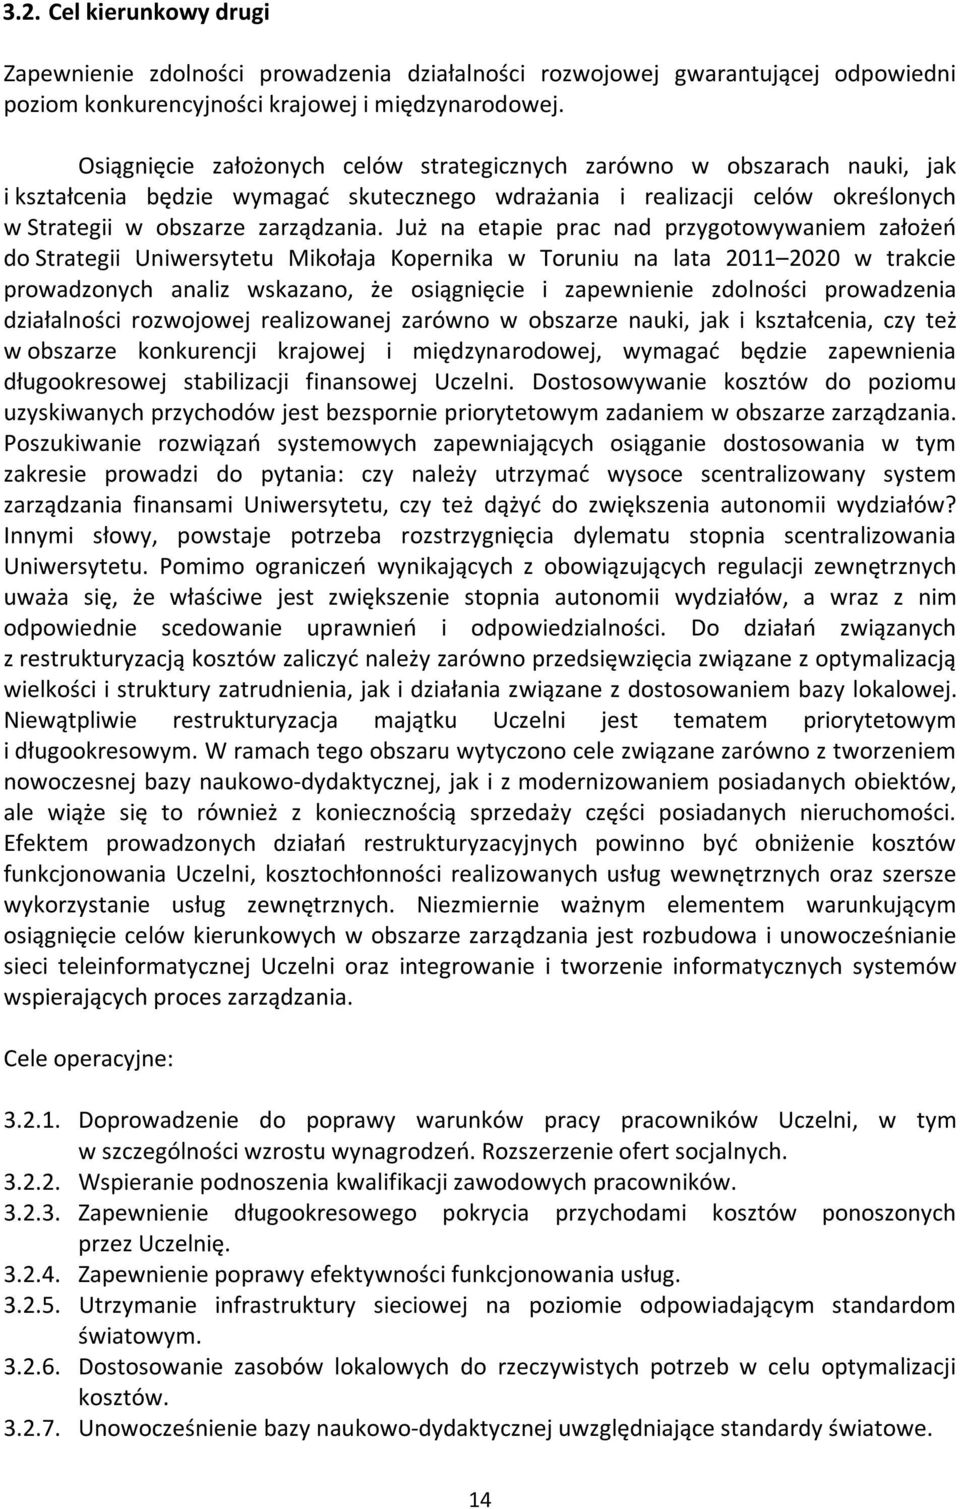 Już na etapie prac nad przygotowywaniem założeń do Strategii Uniwersytetu Mikołaja Kopernika w Toruniu na lata 2011 2020 w trakcie prowadzonych analiz wskazano, że osiągnięcie i zapewnienie zdolności